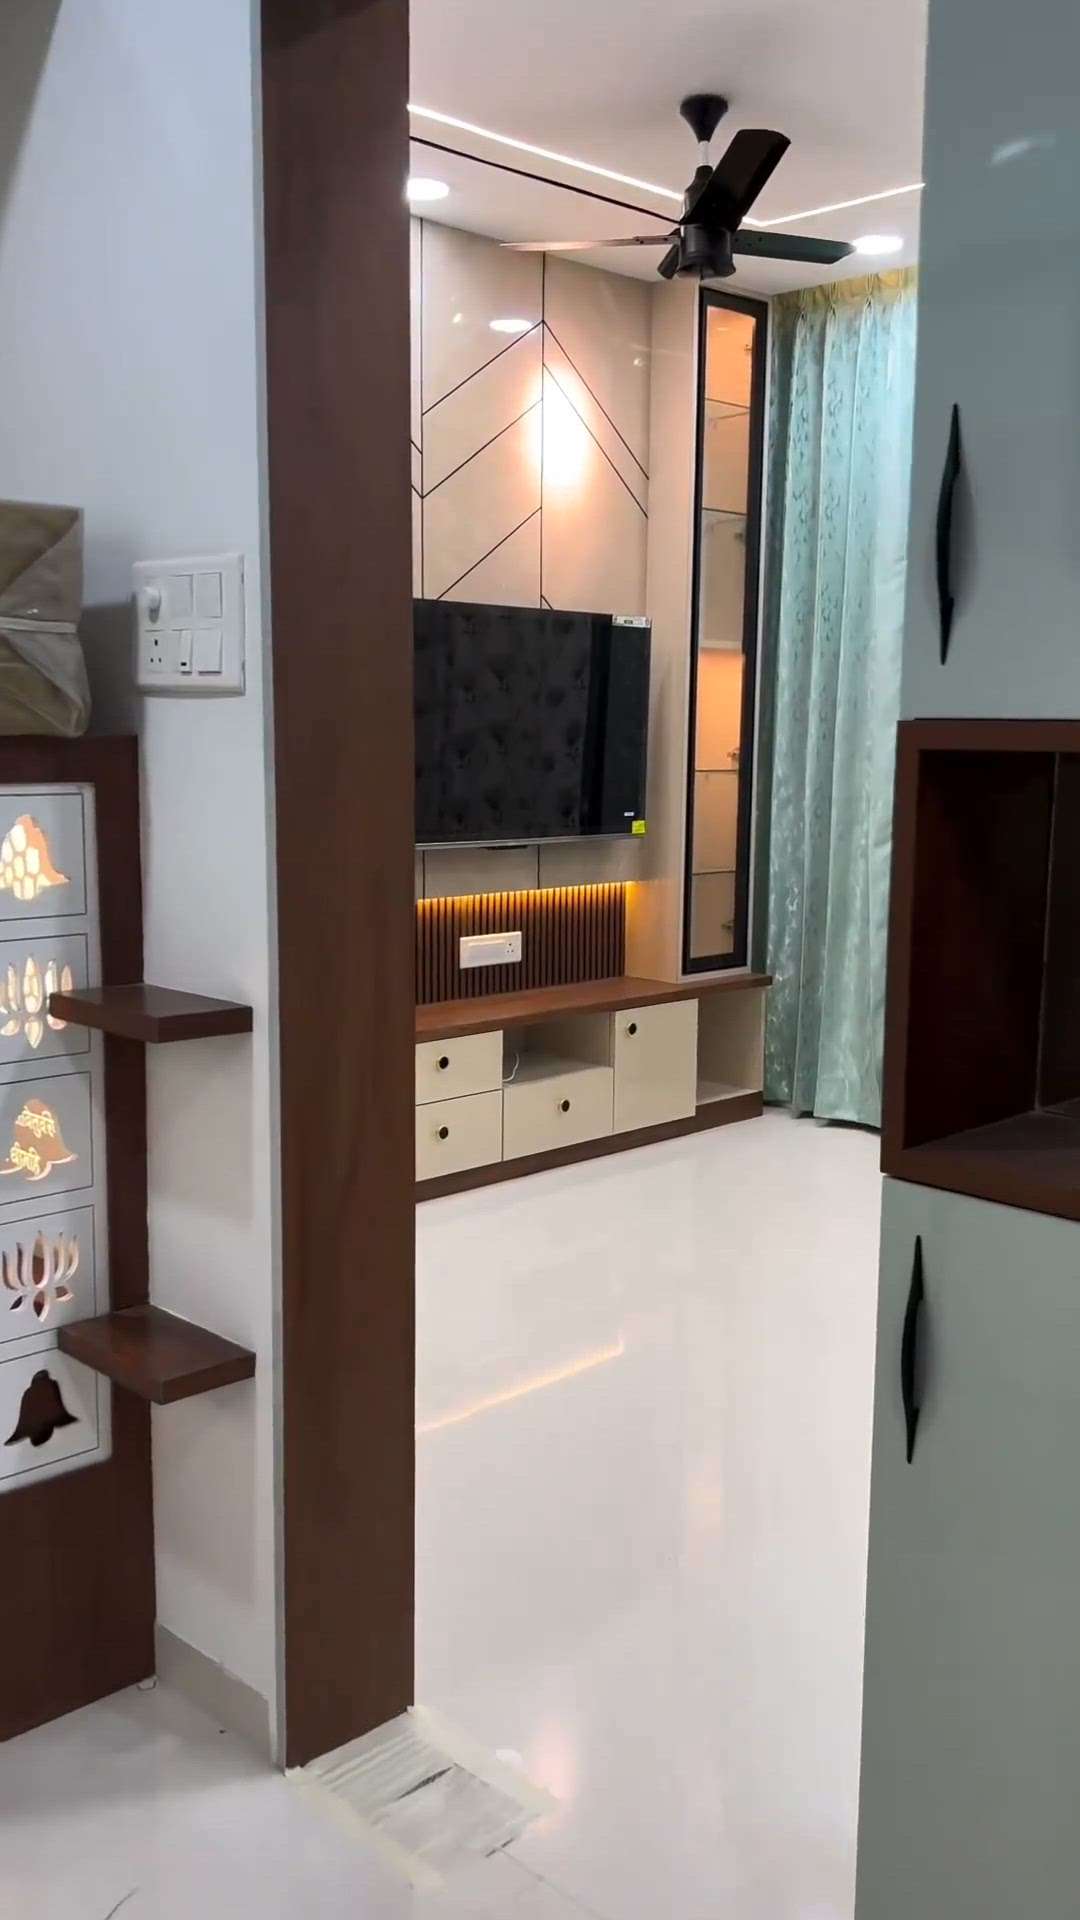 modular furniture ask KoloApp 😱  #Modularfurniture  #koloviral  #TVStand  #Rk  #ask  #askexperts